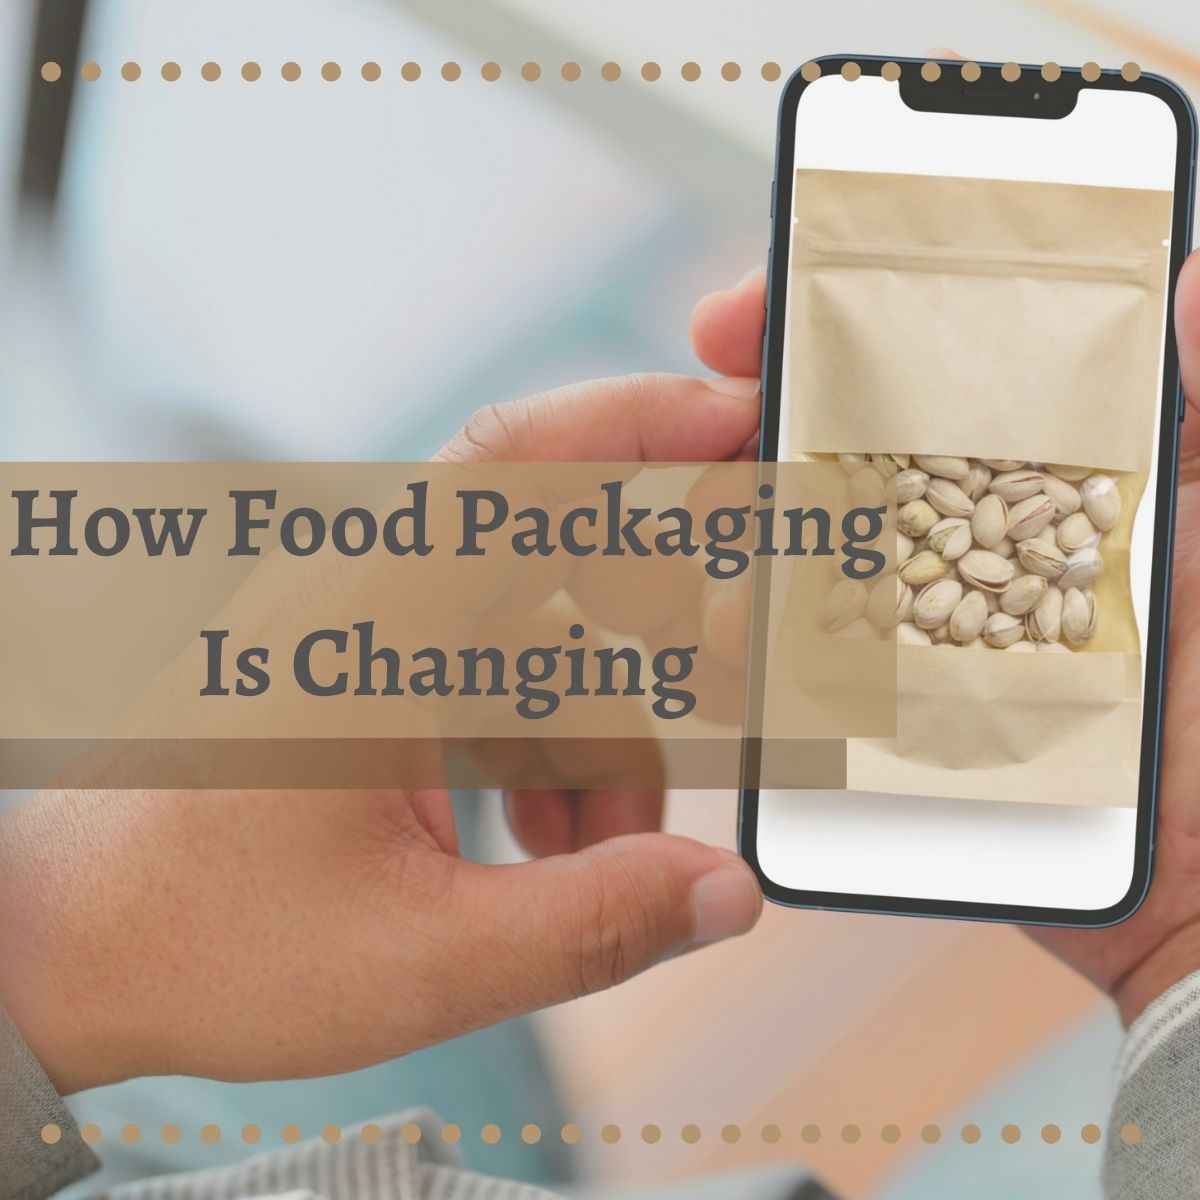 Food-Packaging